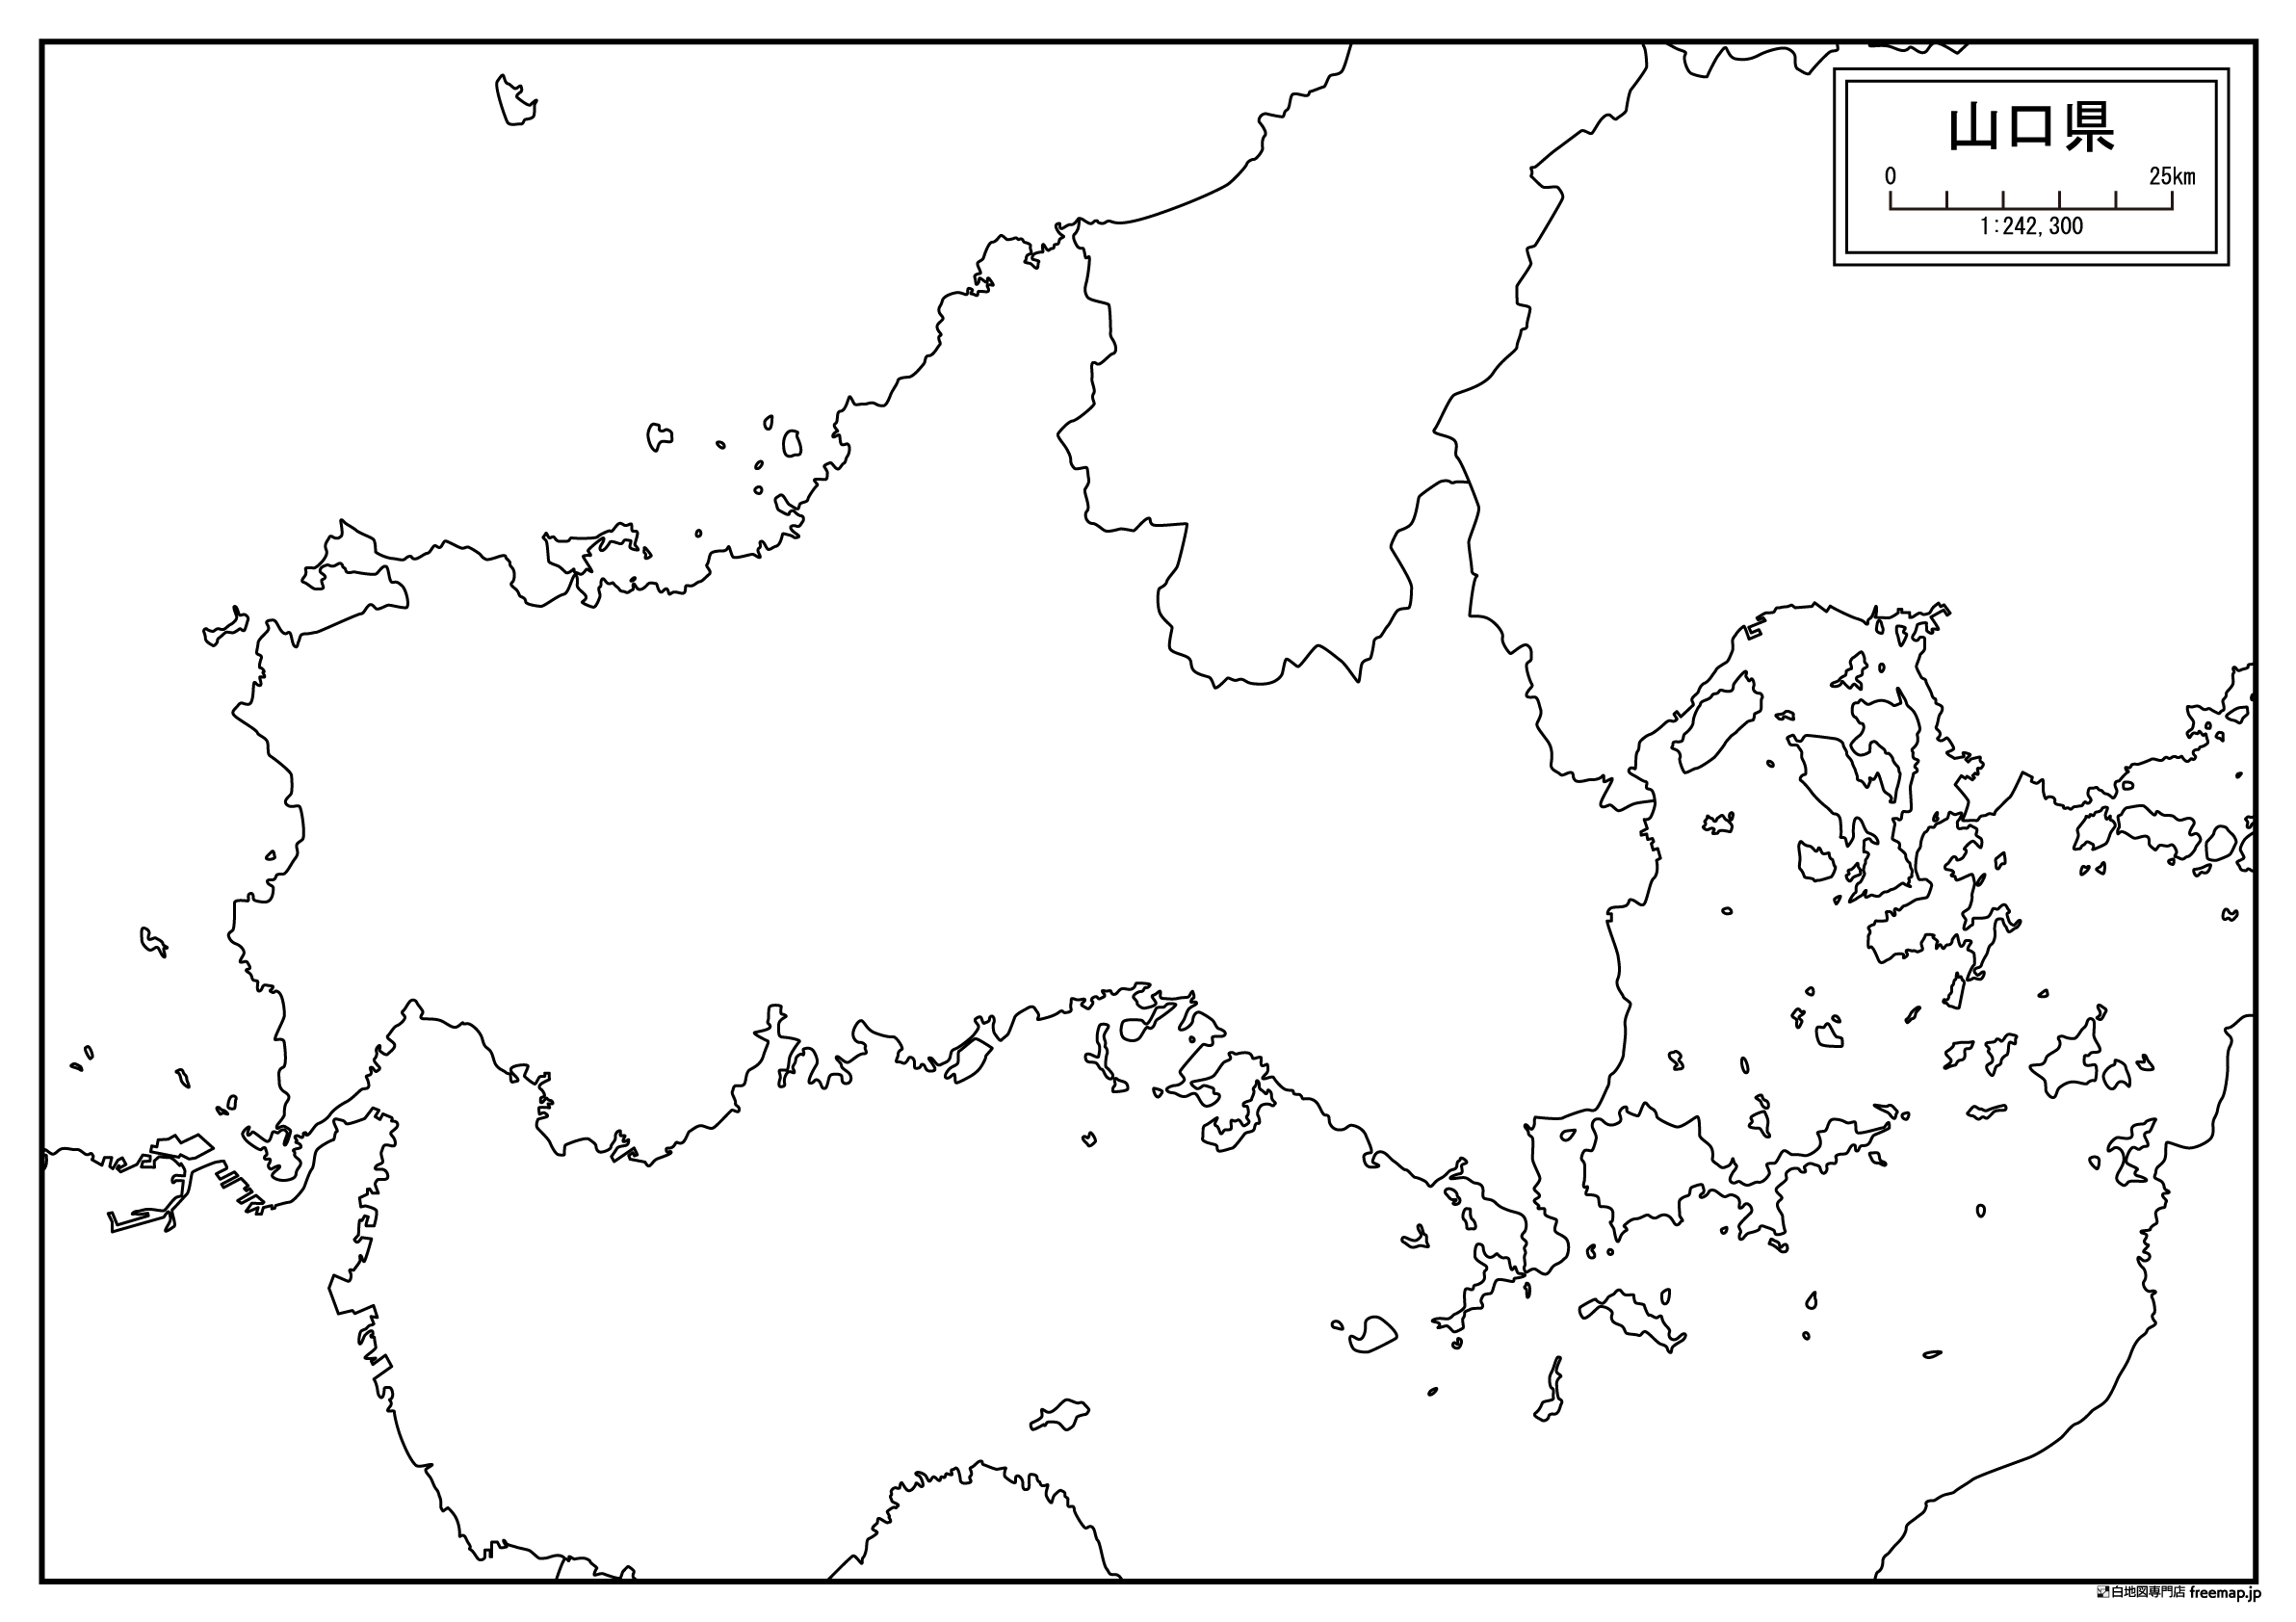 山口市の白地図を無料ダウンロードdownload yamaguchi's map for free of charge.